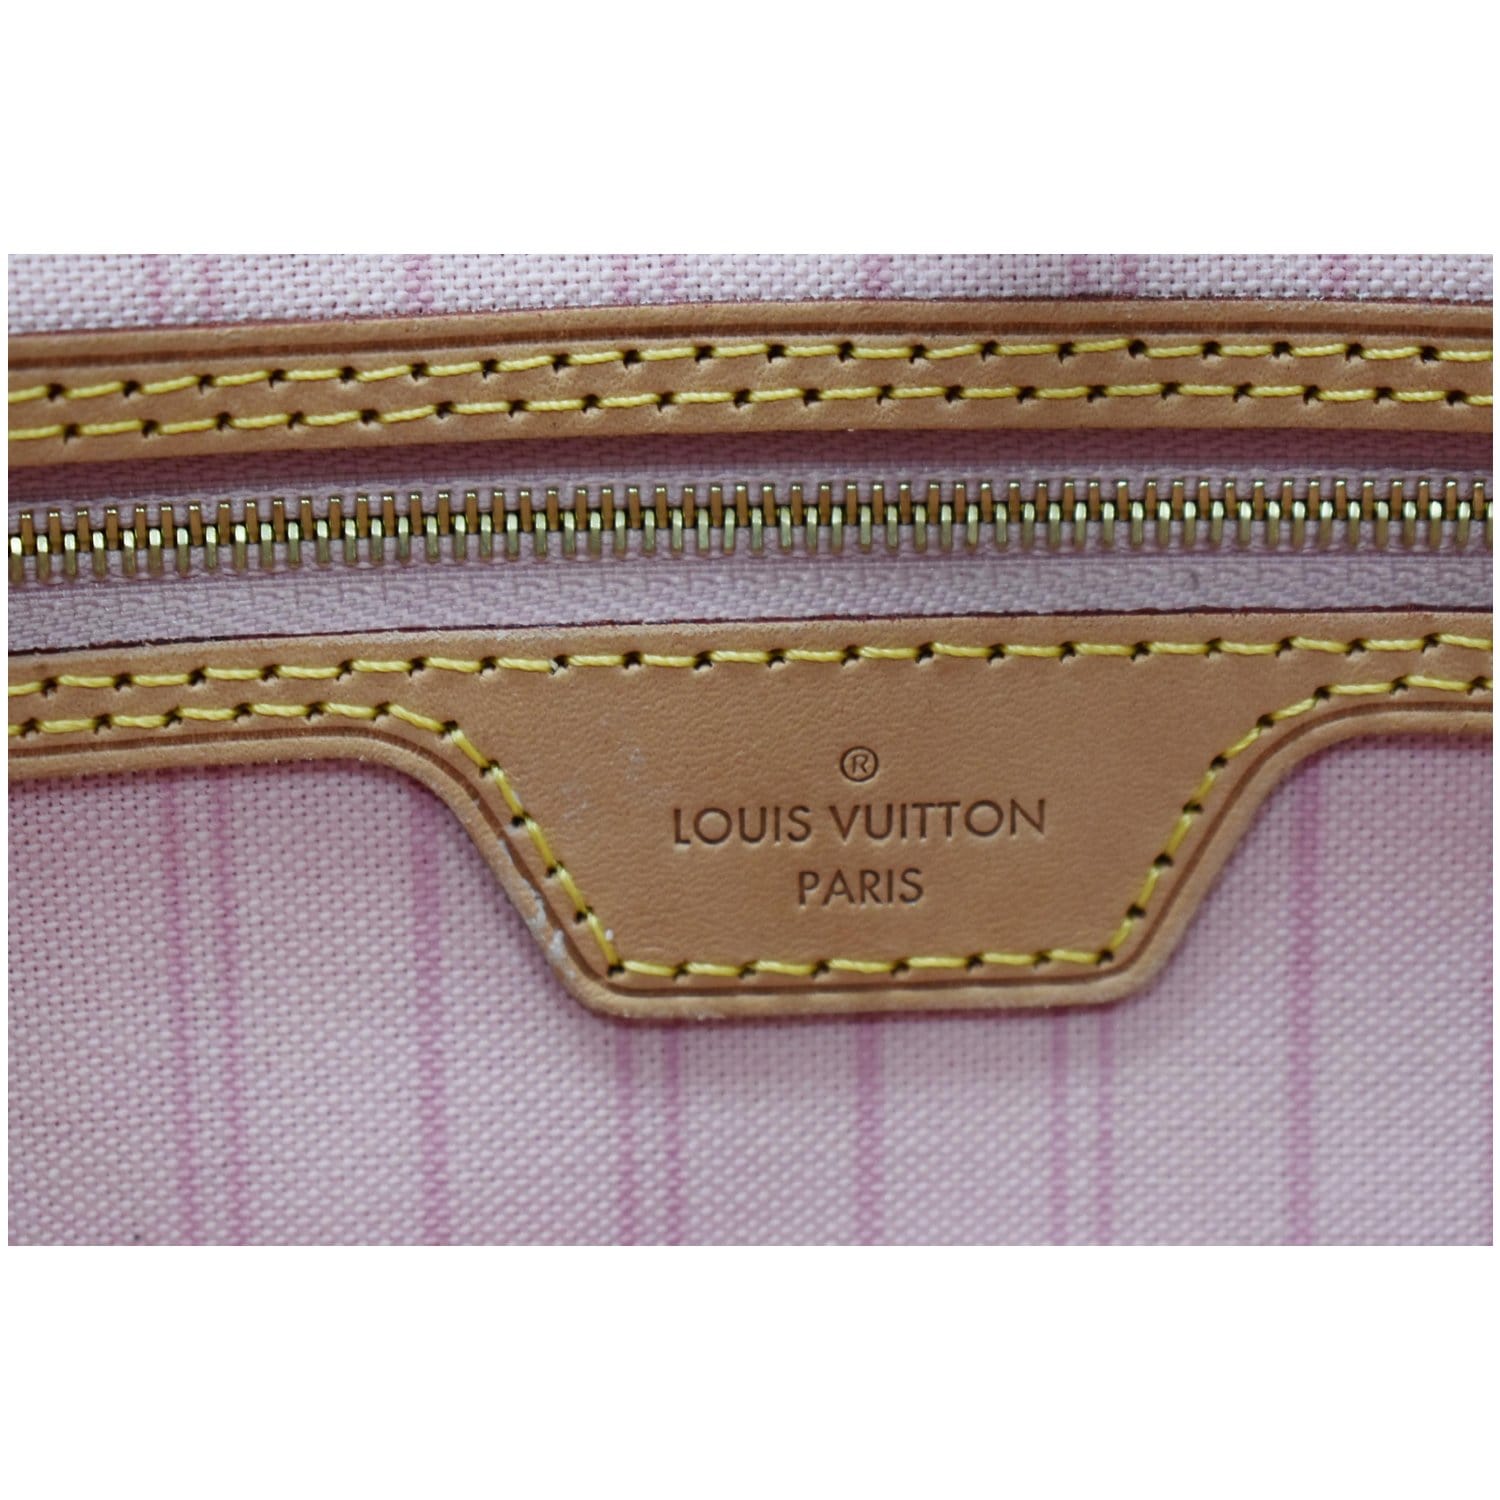 TBD (The Brazilian Dresser) on X: Louis Vuitton! Neverfull GM